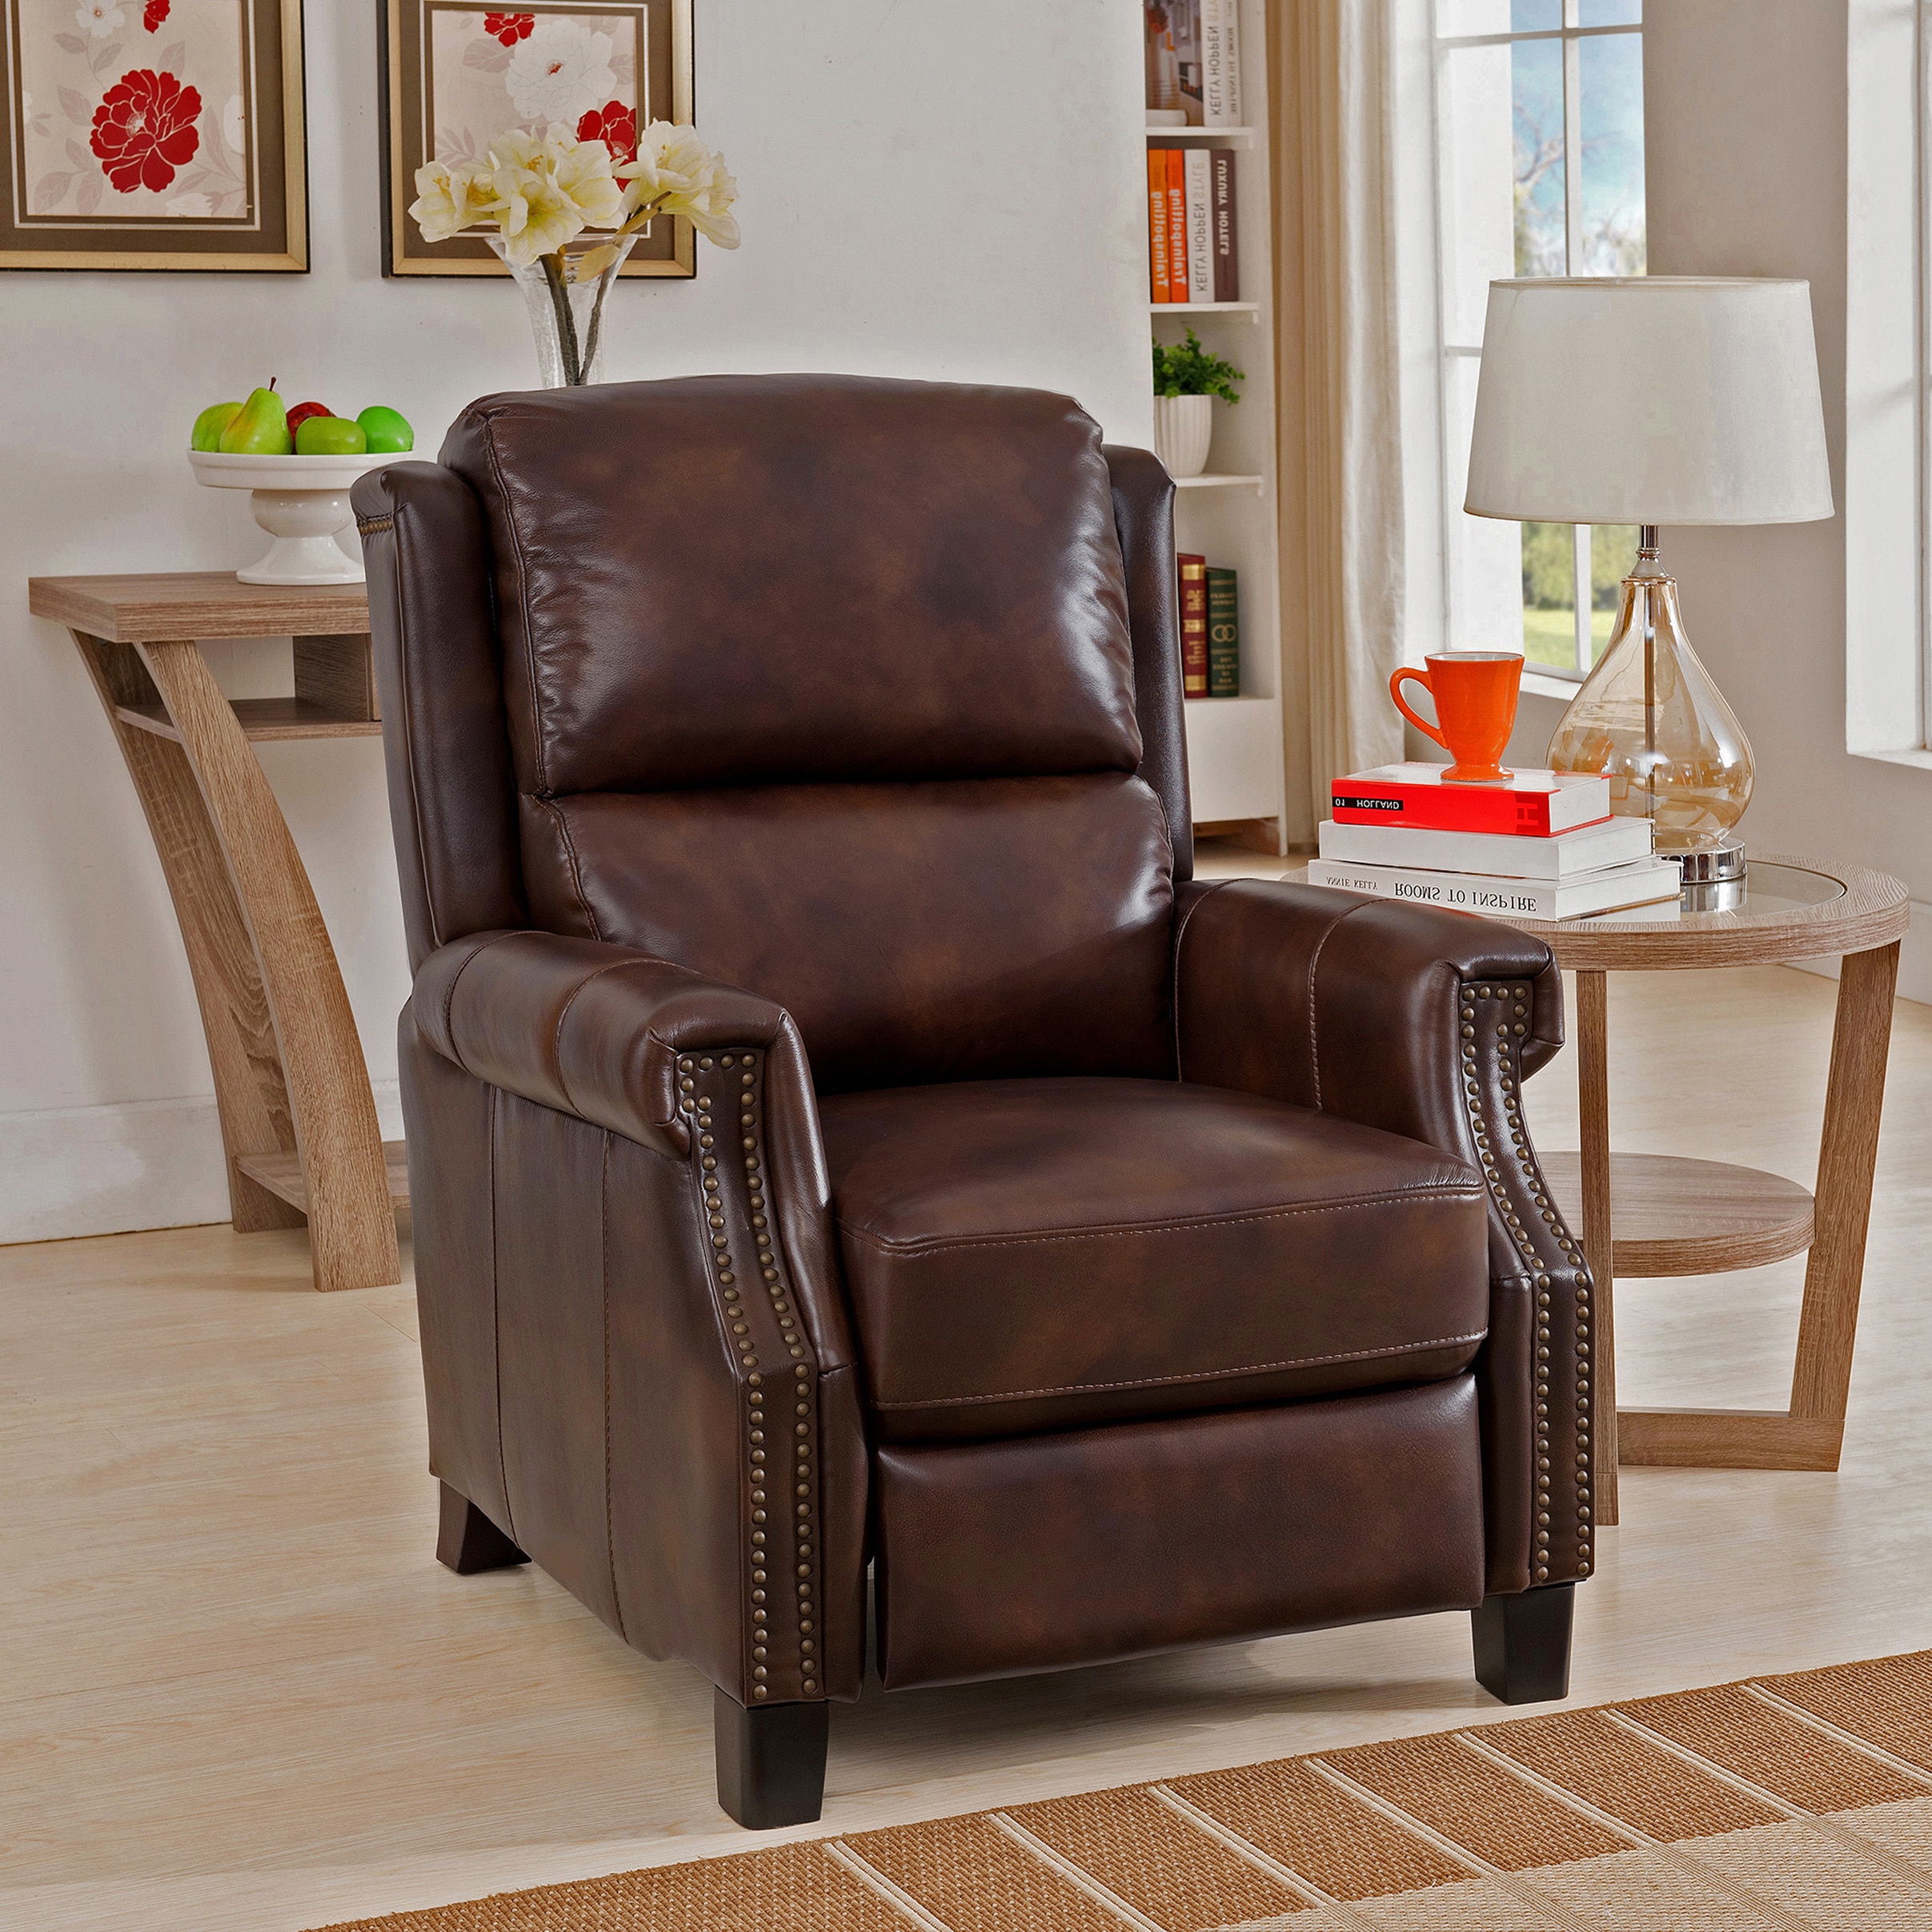 Shop Rivington Brown Premium Top Grain Leather Recliner Chair - On Sale